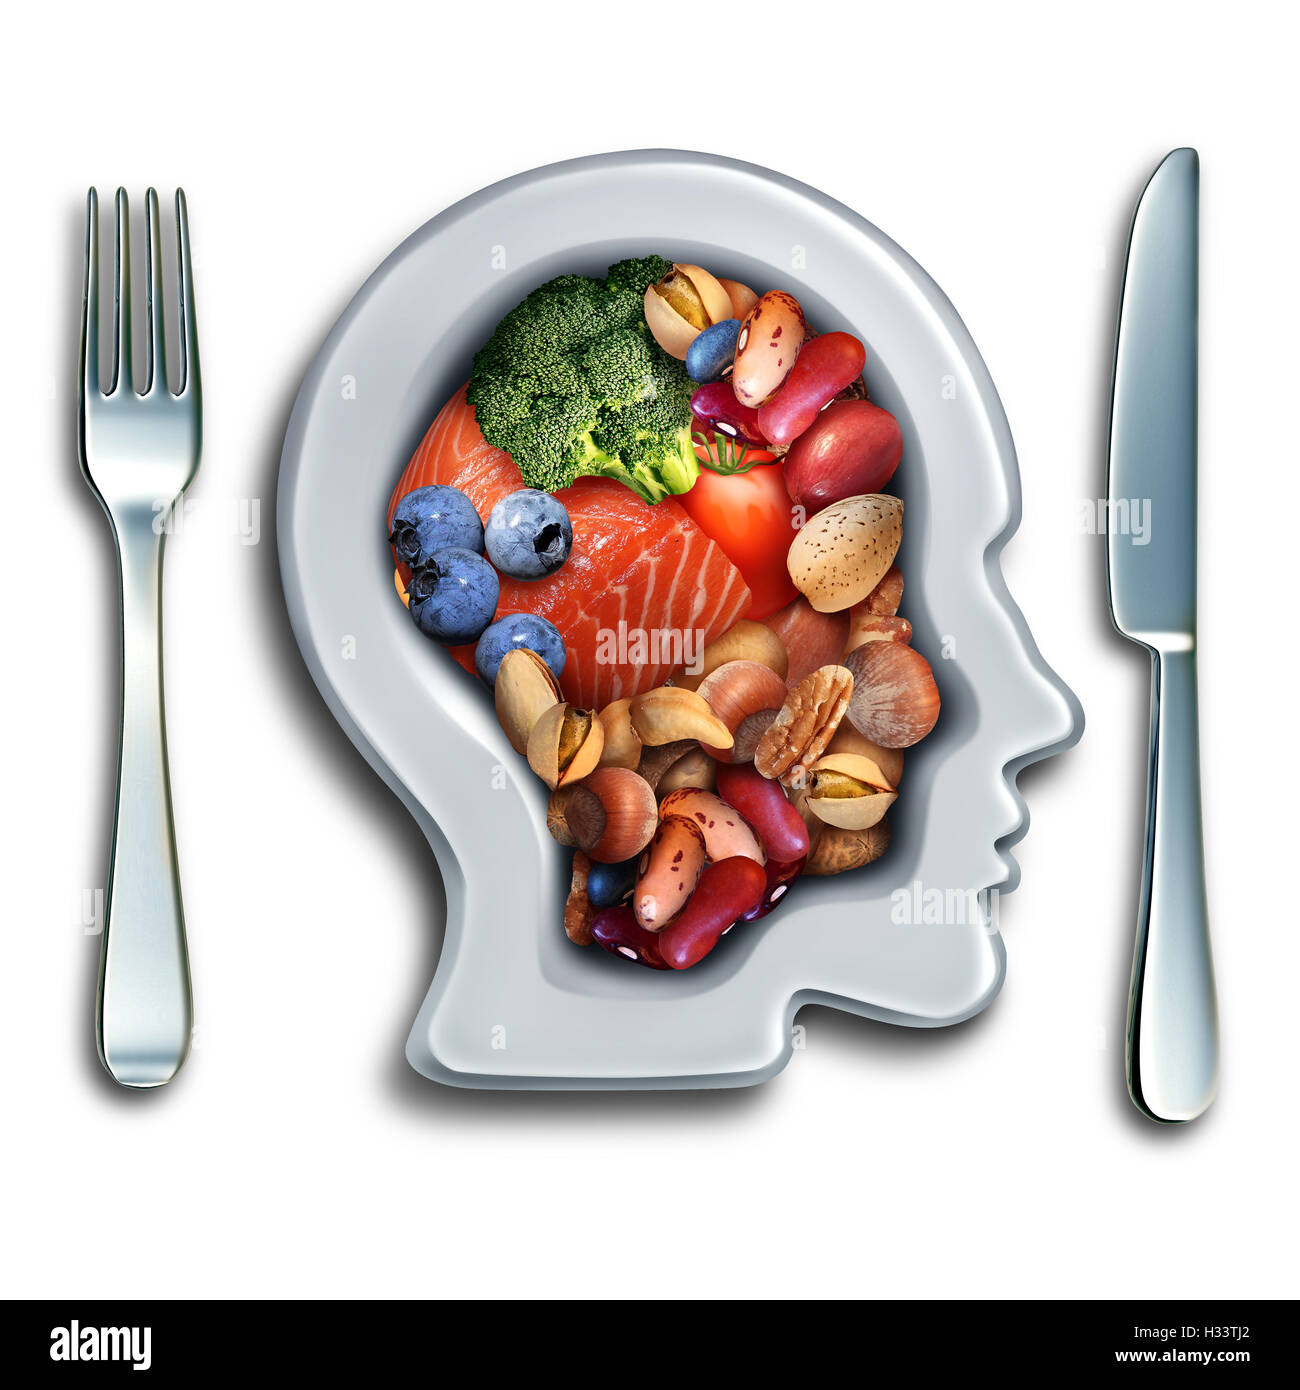 Brainfood für Schub Brainpower Ernährungskonzept als eine Gruppe von nahrhaften Nüssen Fisch Gemüse und Beeren, die reich an Omega-3-Fettsäuren mit Vitaminen und Mineralstoffen für Geist Gesundheit mit 3D Abbildung Elemente. Stockfoto